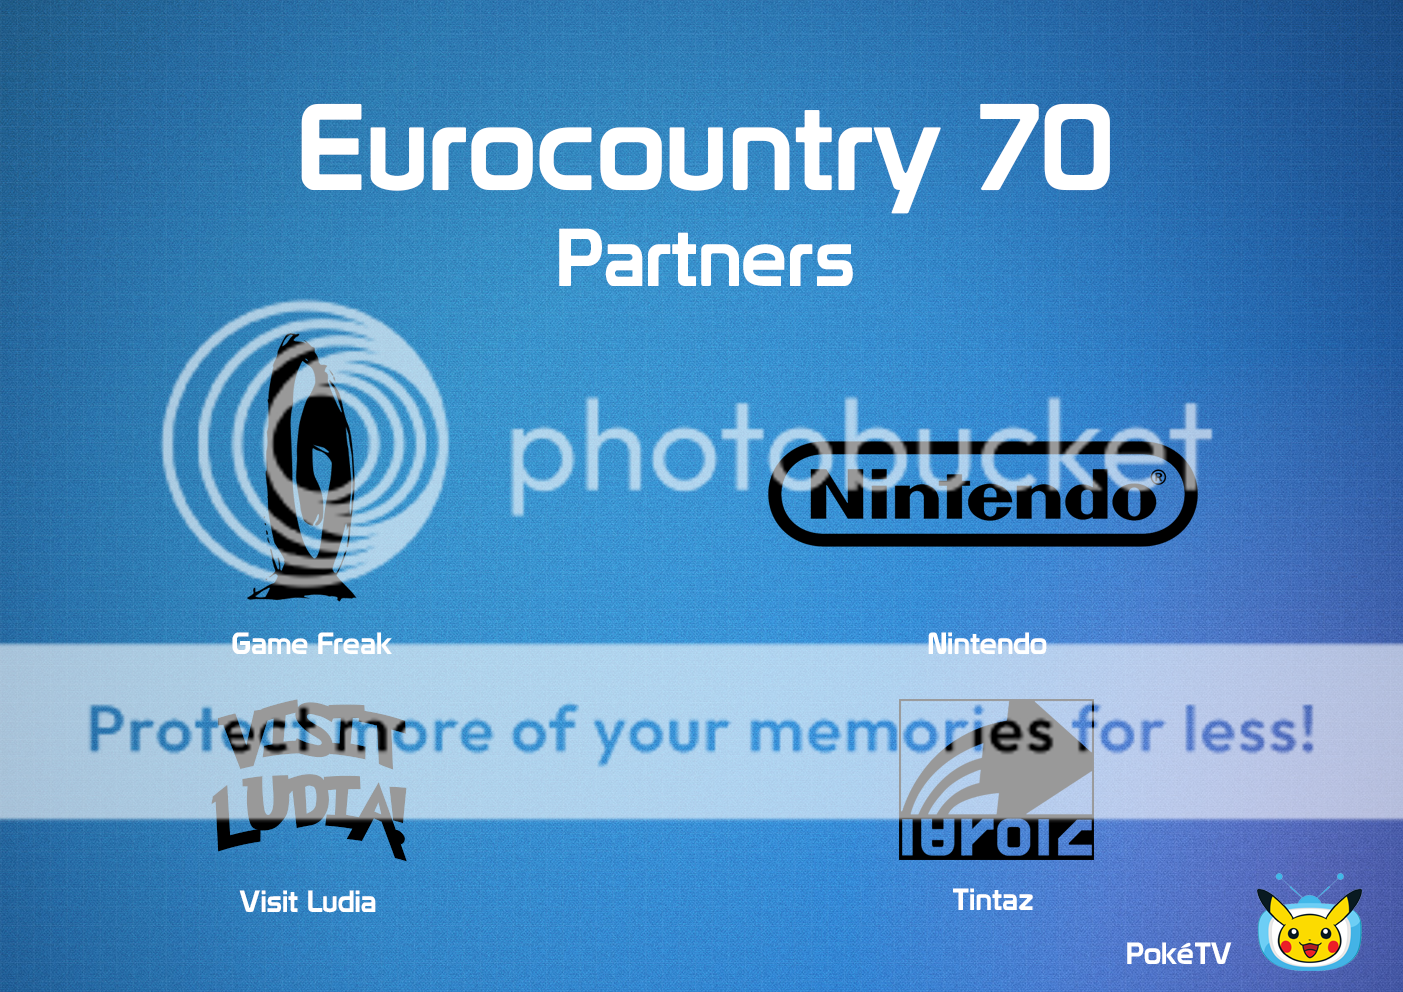 [PRESENTACIÓN] Eurocountry 70: Light your senses 14530549-eca0-4594-94cd-b7dff844a53a-original